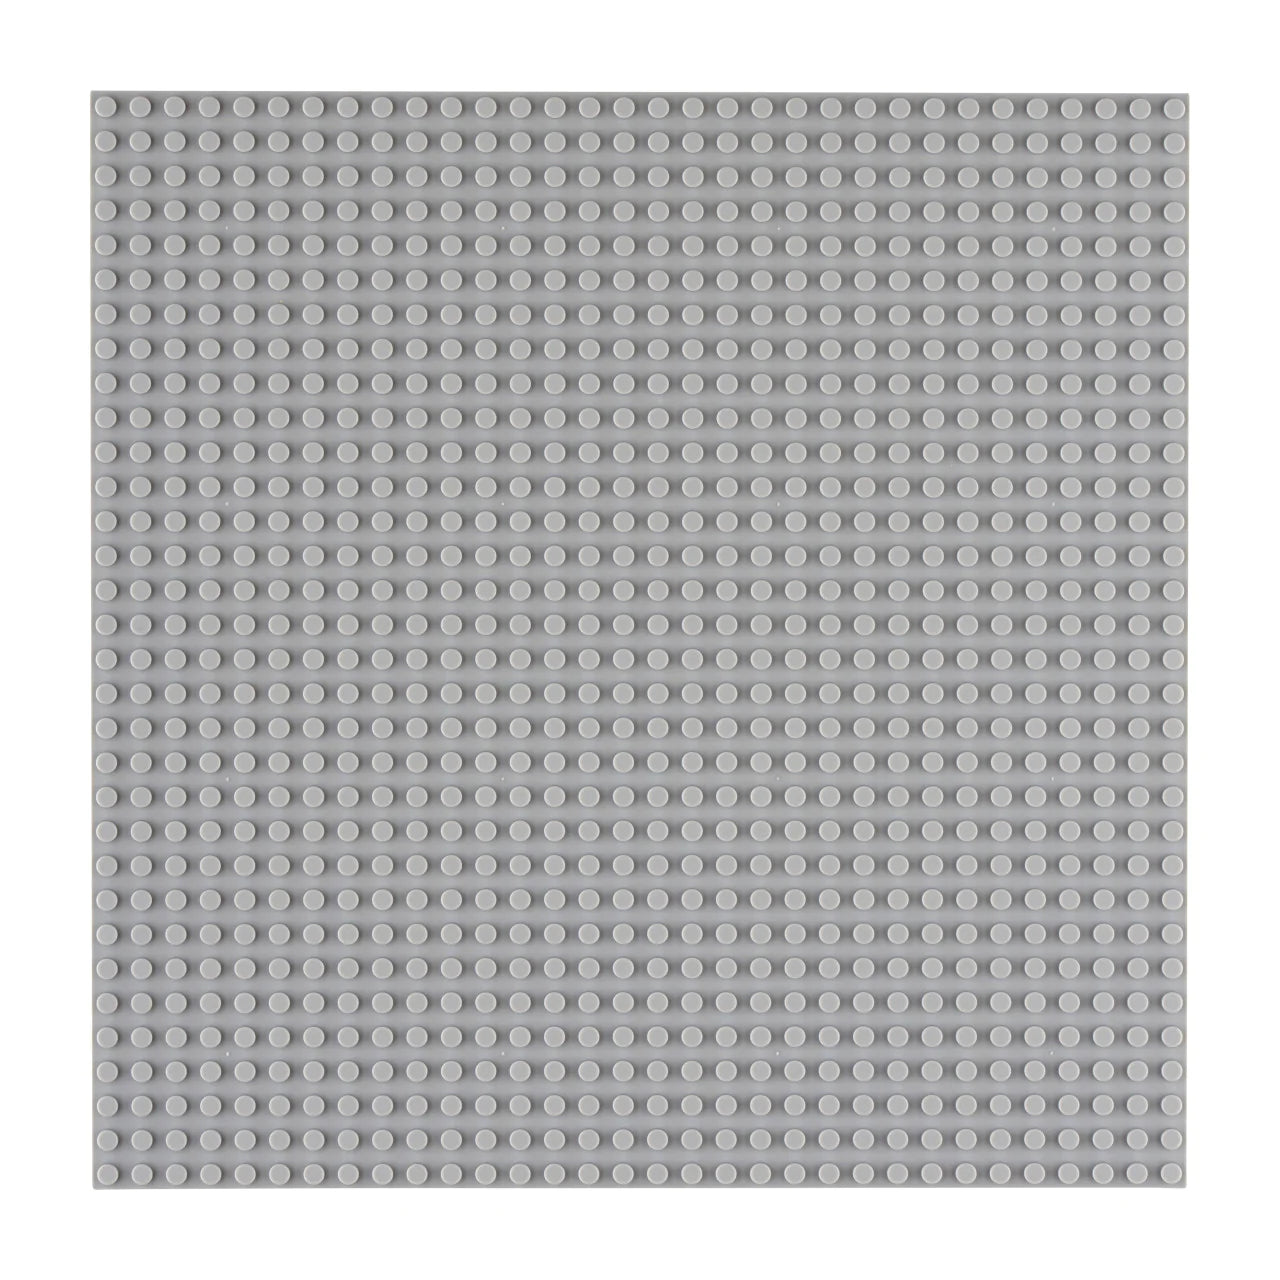 Baseplate hell grau (32x32)